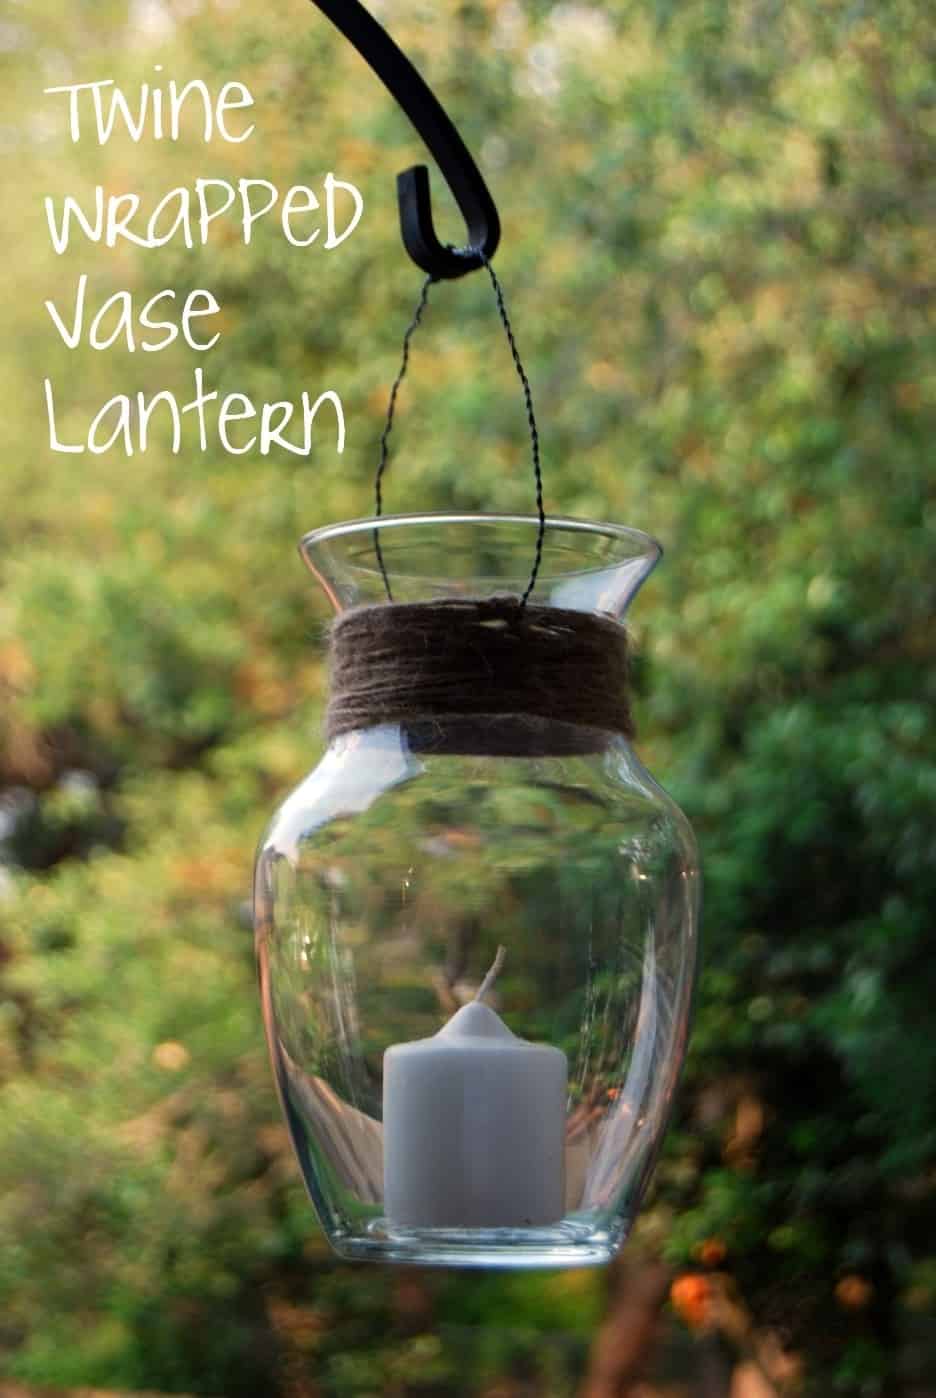 Vase lantern